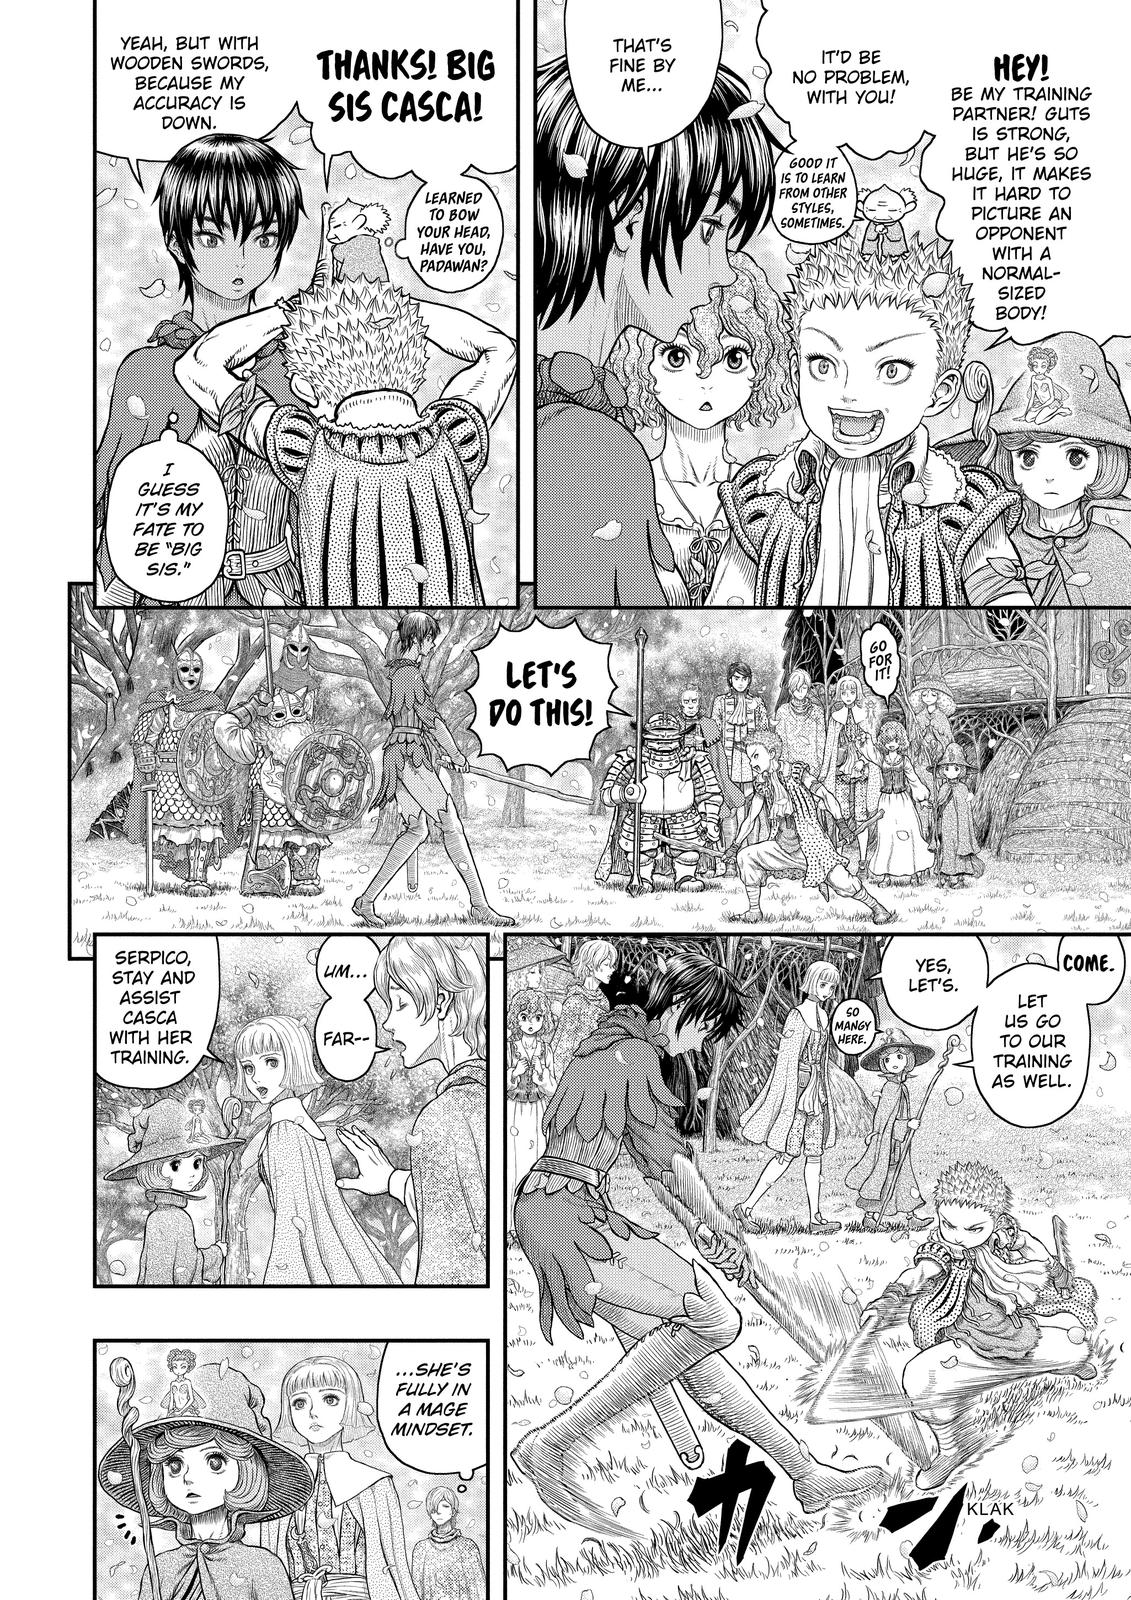 Berserk Manga Chapter 359 image 12